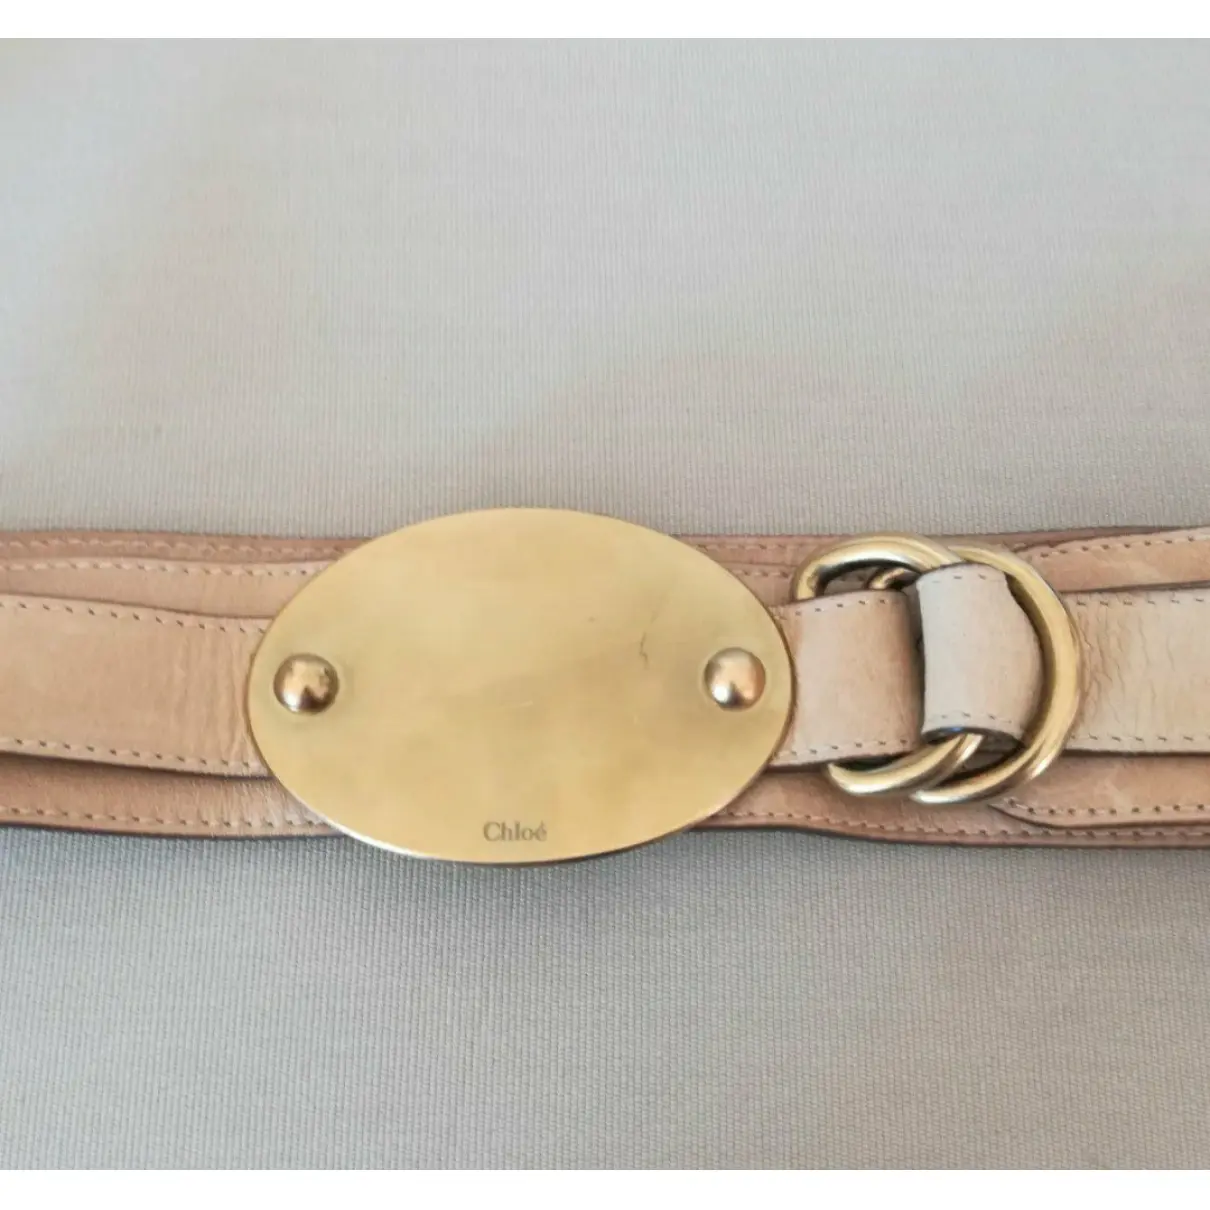 Buy Chloé Leather belt online - Vintage